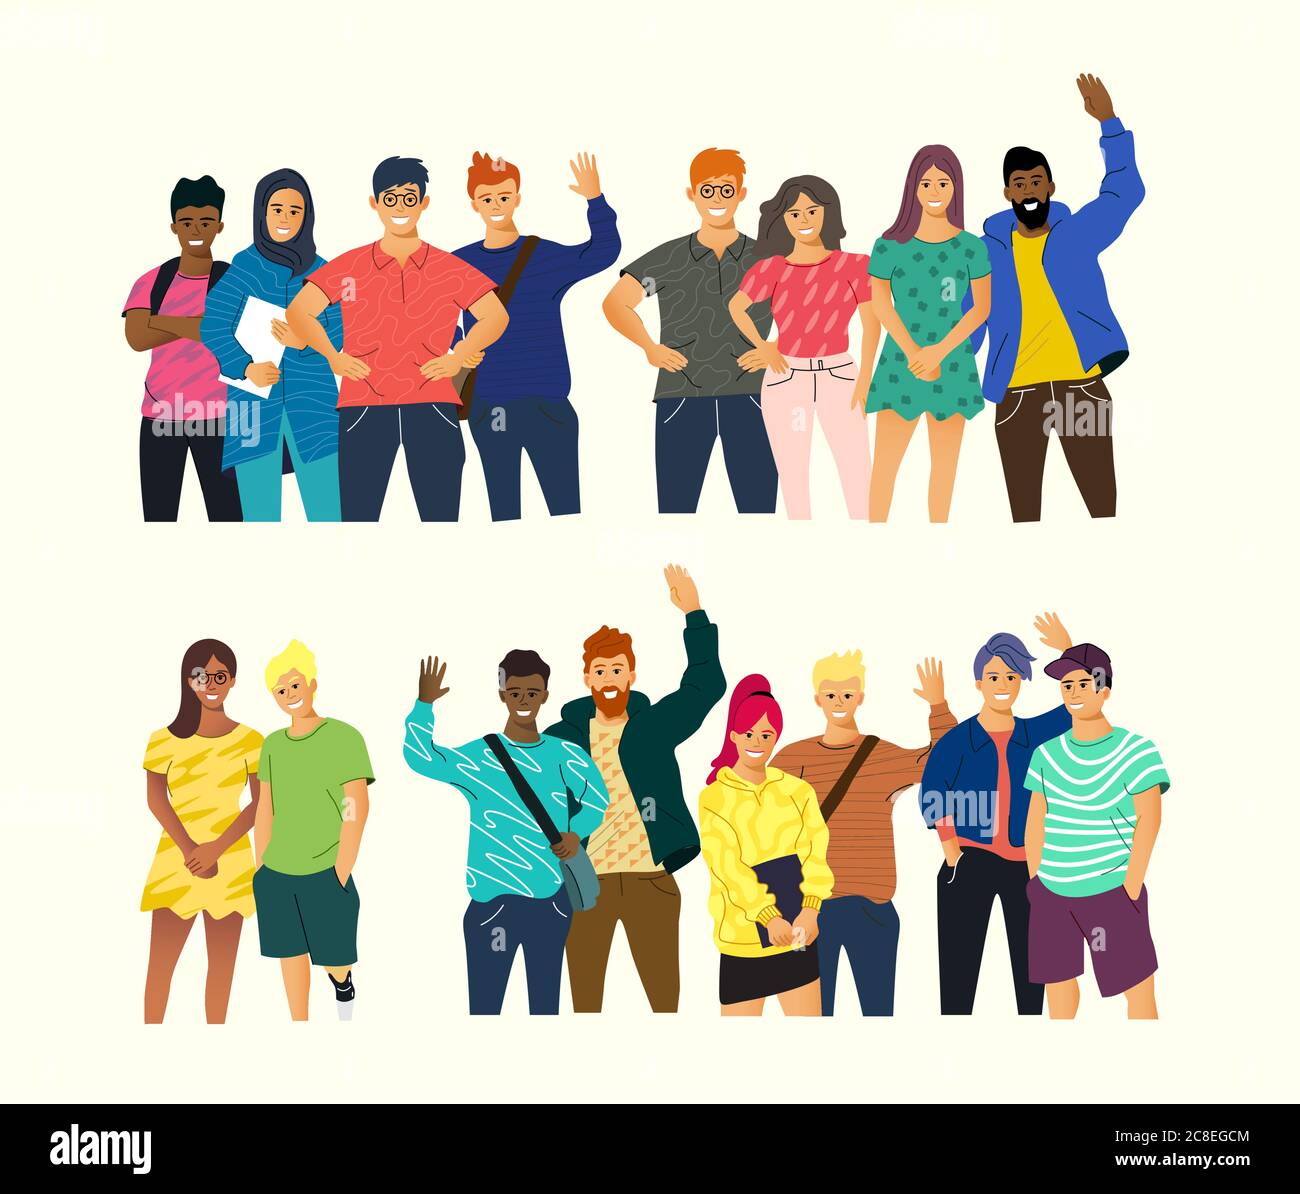 Eine Sammlung junger glücklicher Menschen, die stehen und lächeln. Community und multikulturelle Vektor Menschen Illustration. Stock Vektor